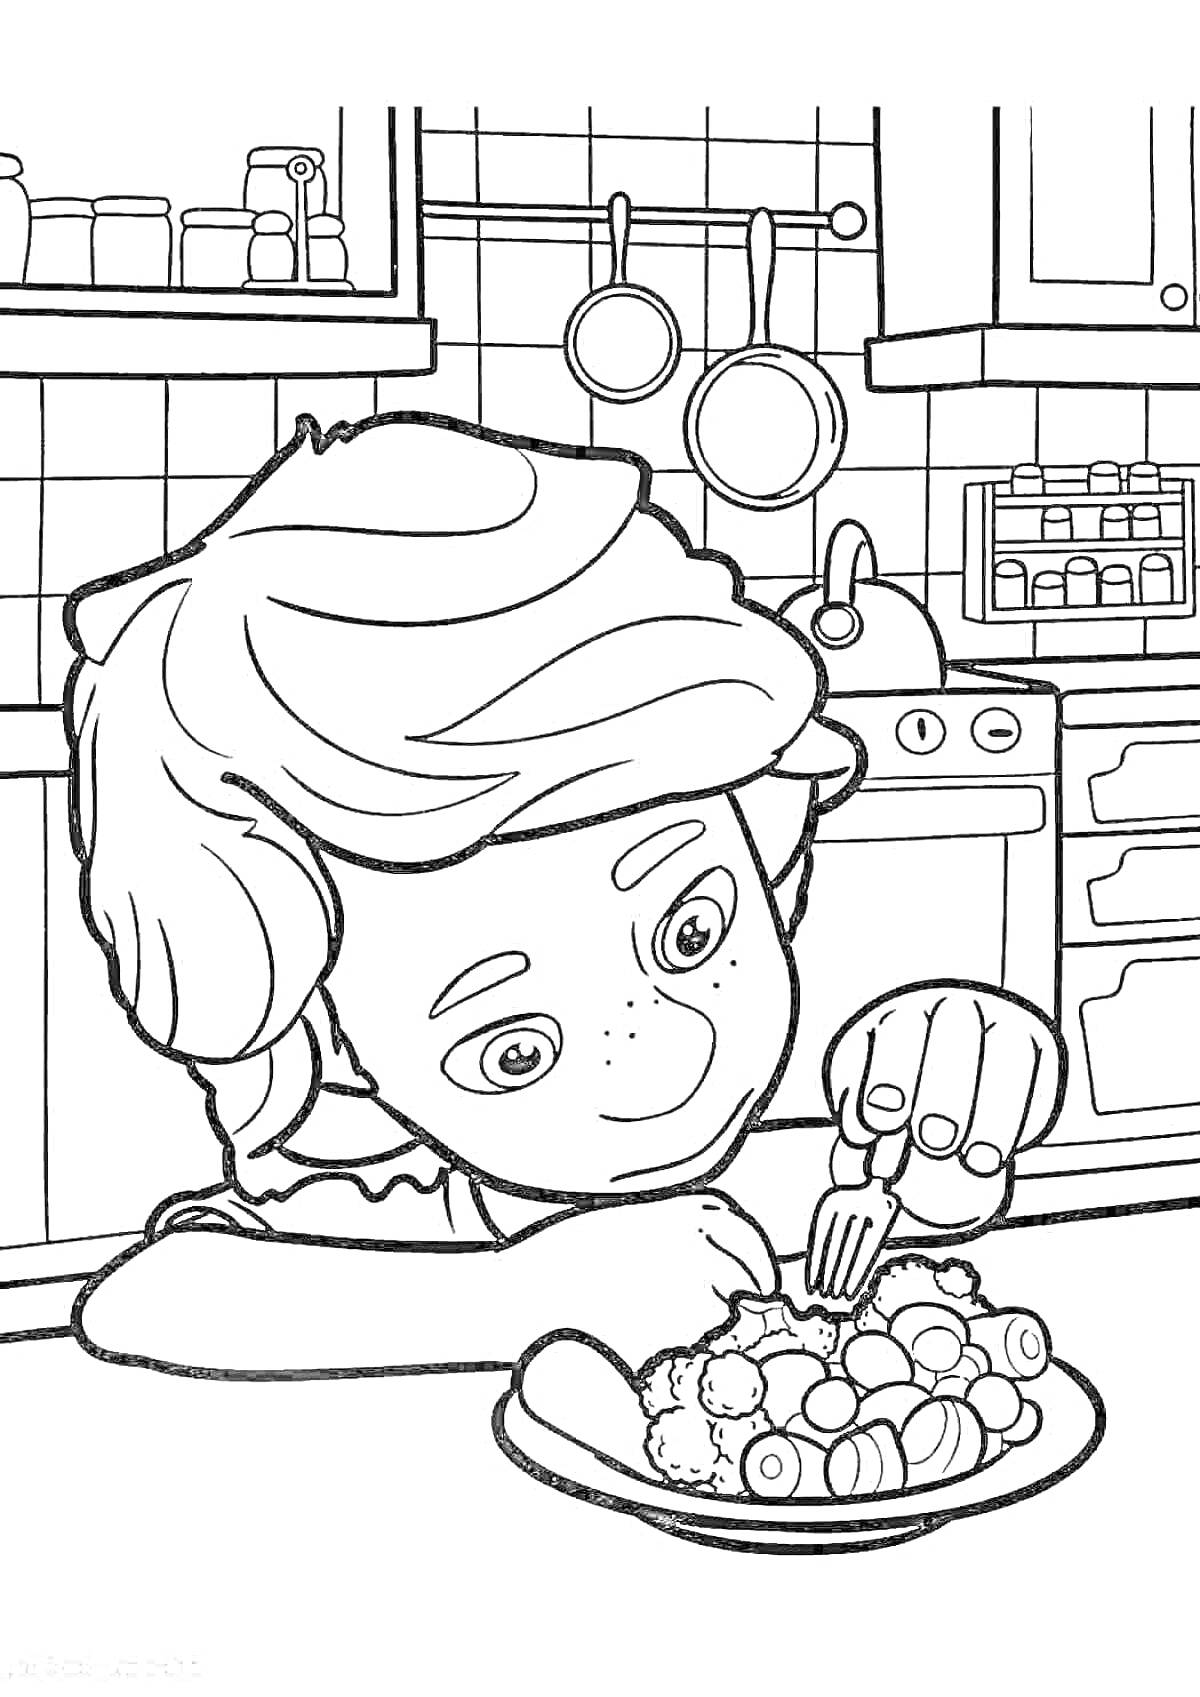 Раскраска Мальчик в кухне майя с тарелкой еды, полки с посудой, плита с кастрюлями на заднем плане